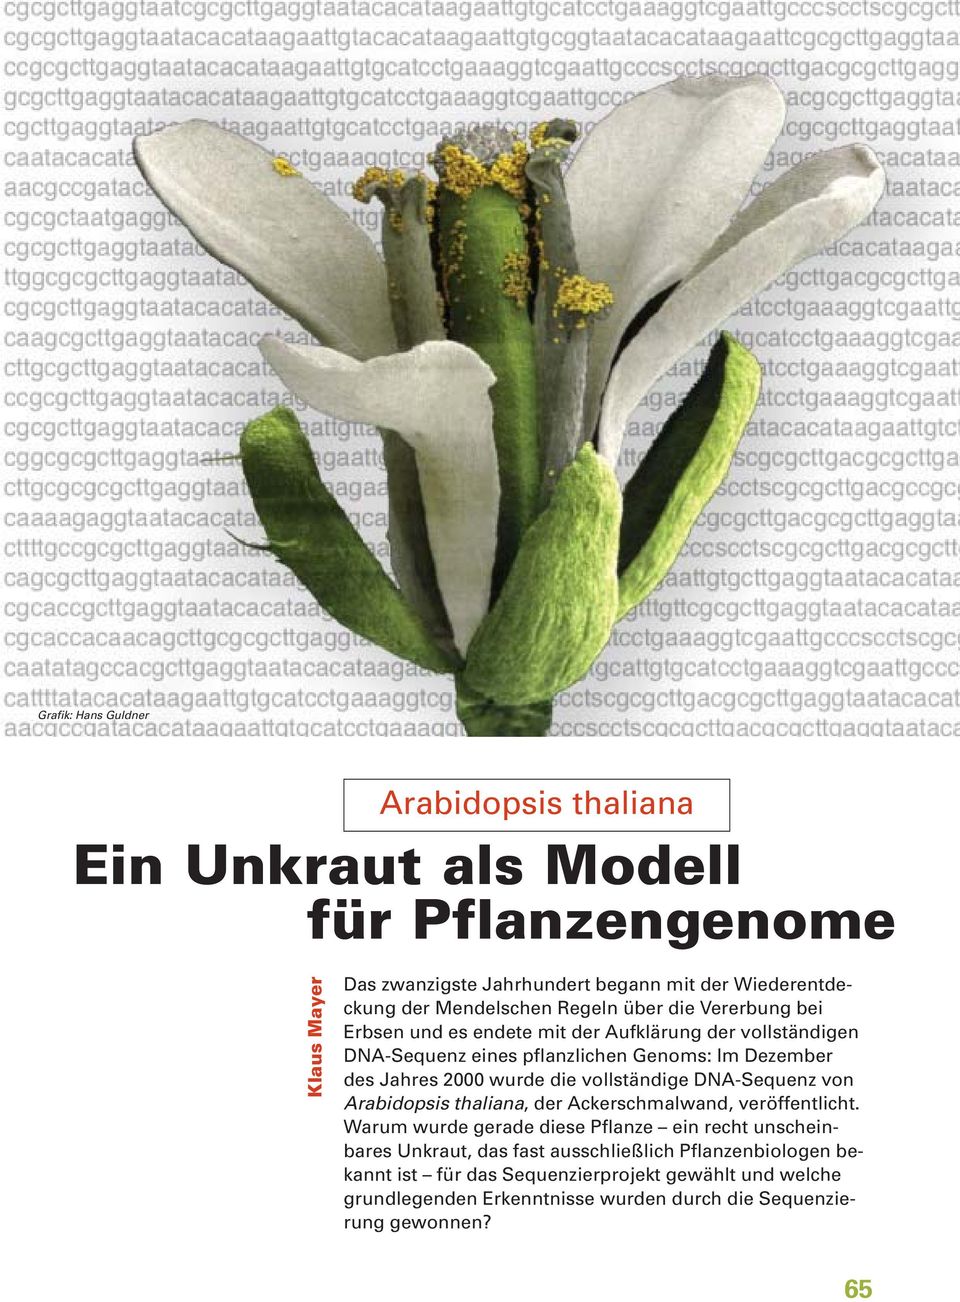 2000 wurde die vollständige DNA-Sequenz von Arabidopsis thaliana, der Ackerschmalwand, veröffentlicht.